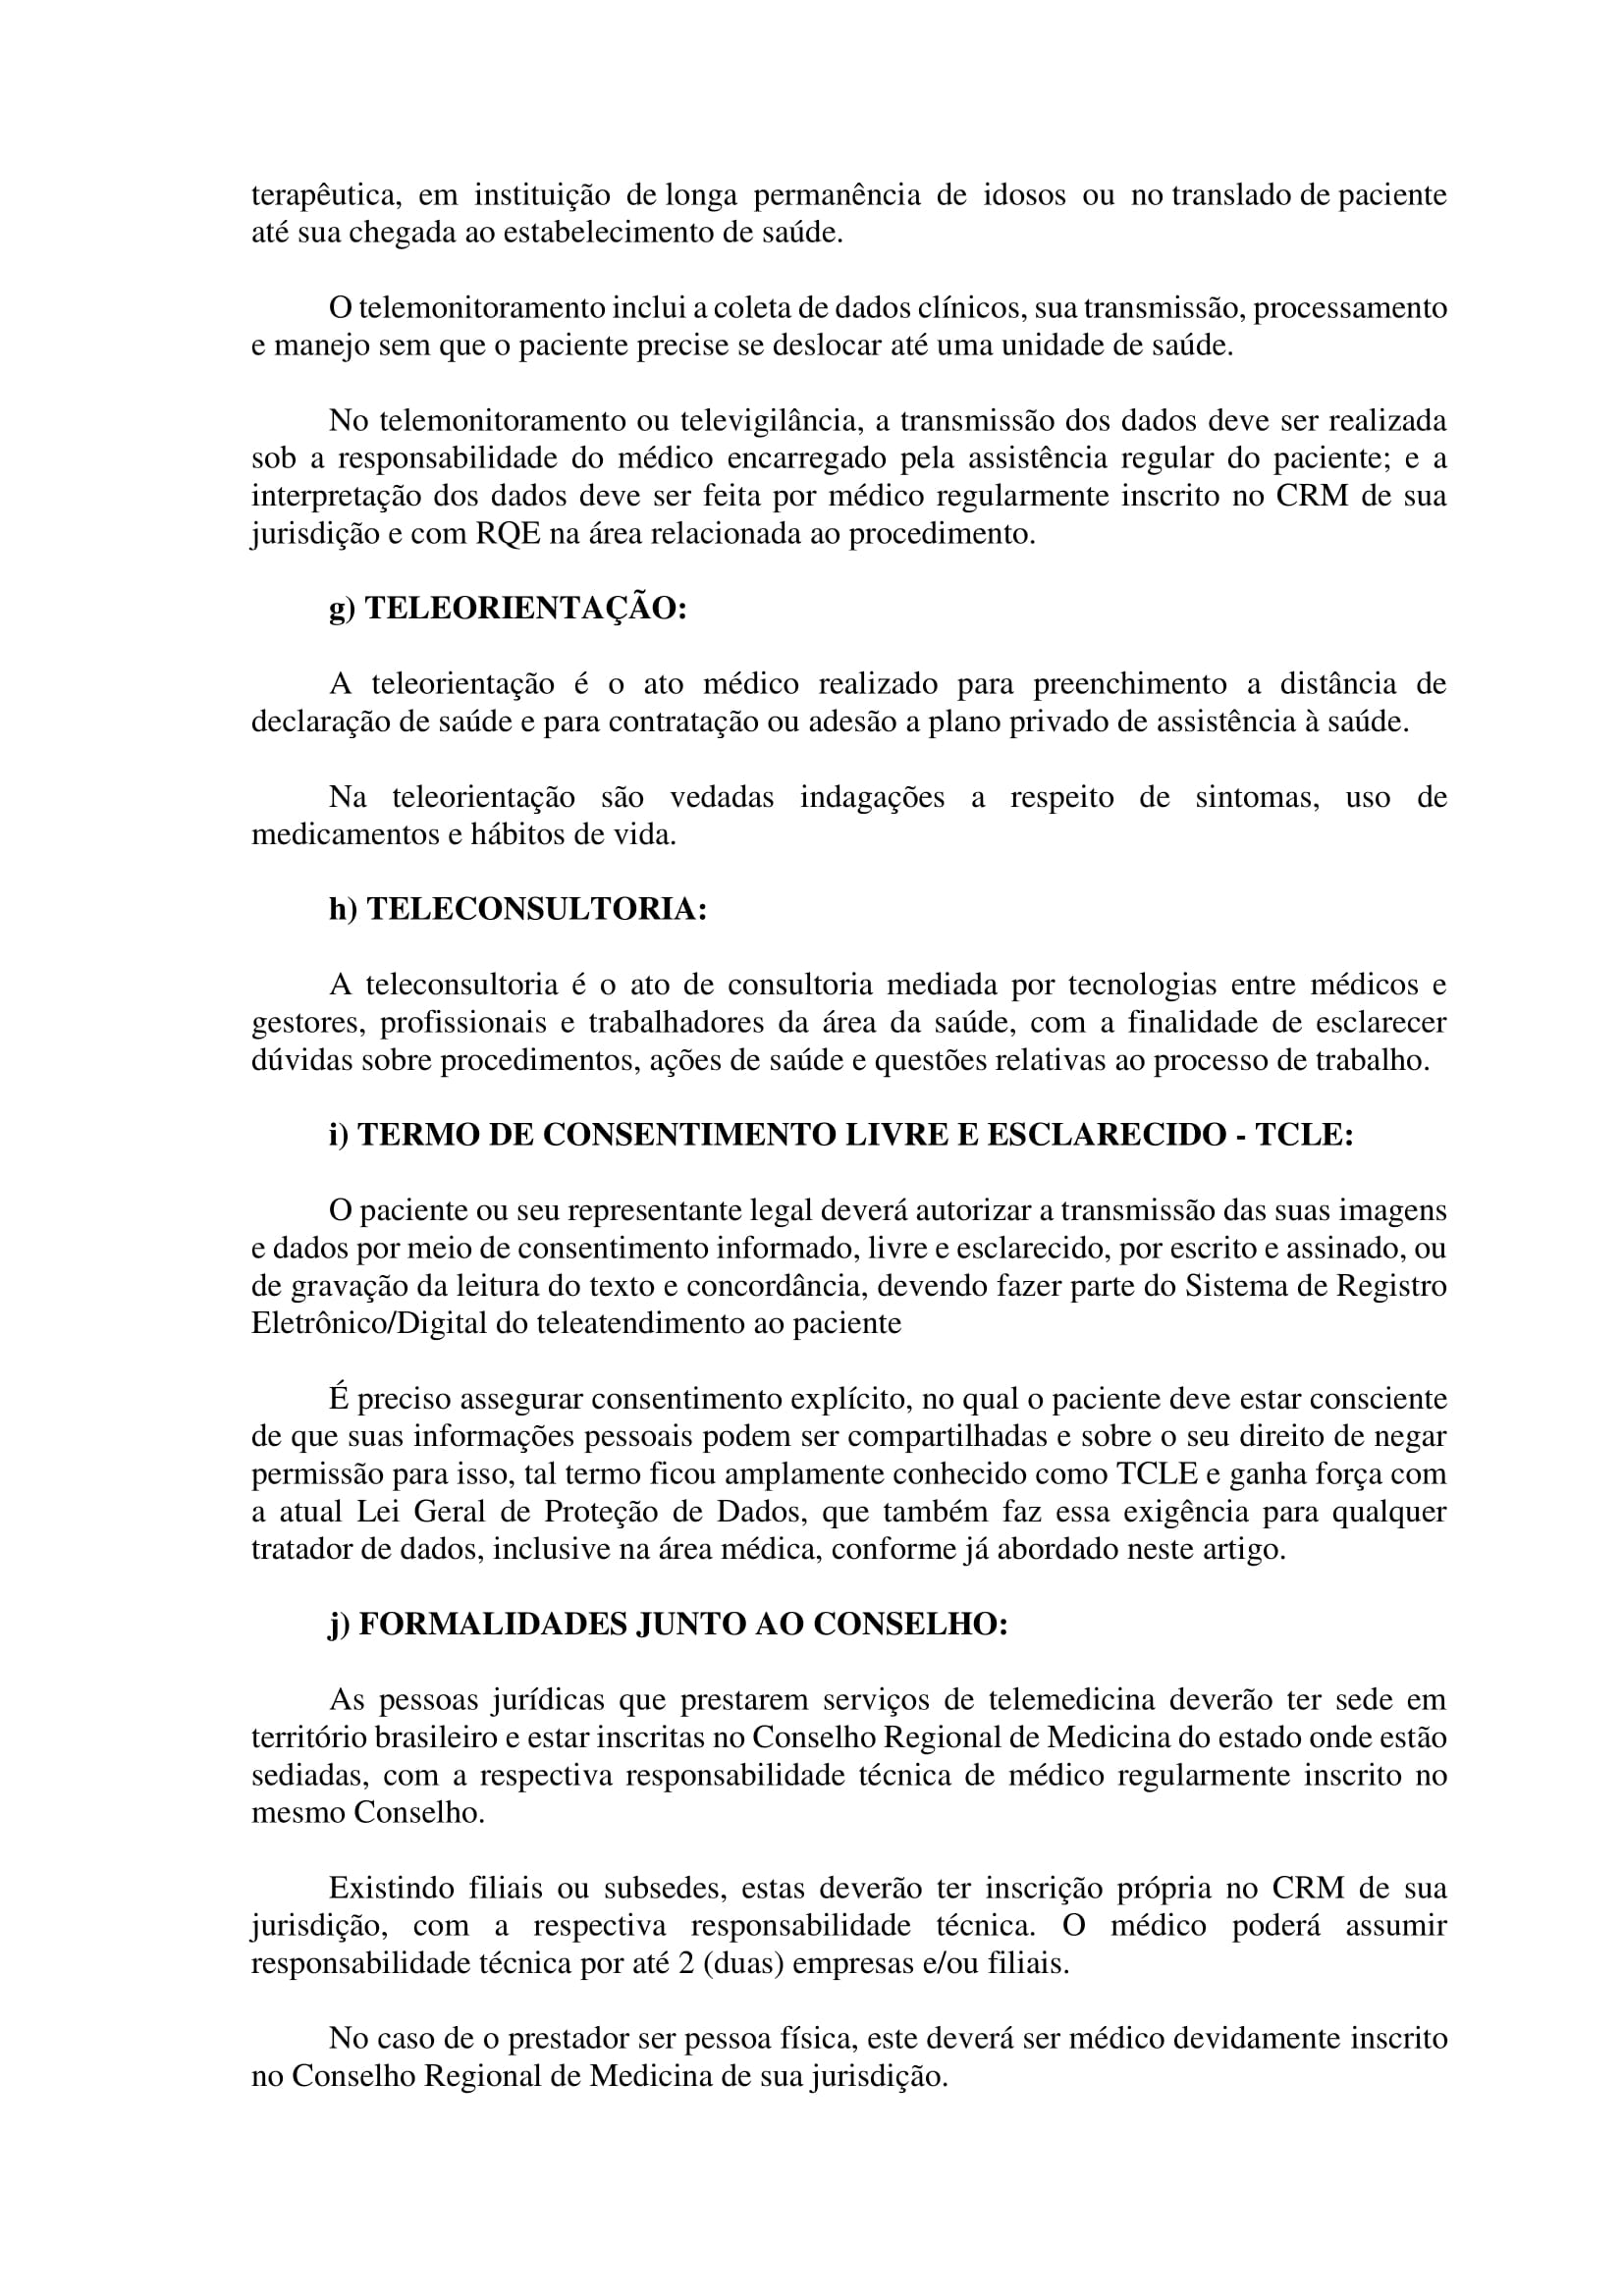 Artigo sobre Telemedicina e suas implicações regulatórias - Tiago Torres-07